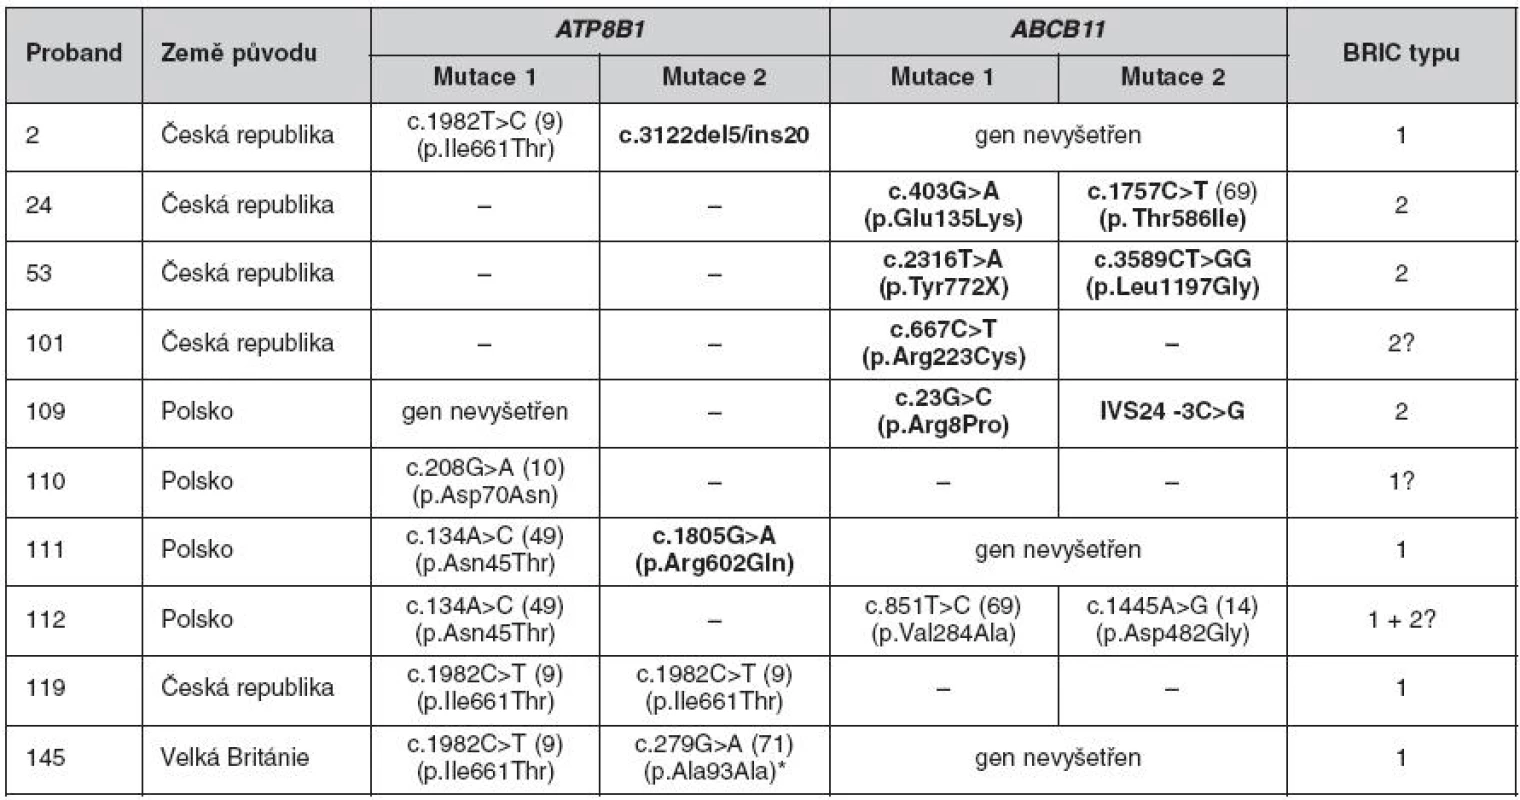 Mutace v genech ATP8B1 a ABCB11 u nemocných s BRIC